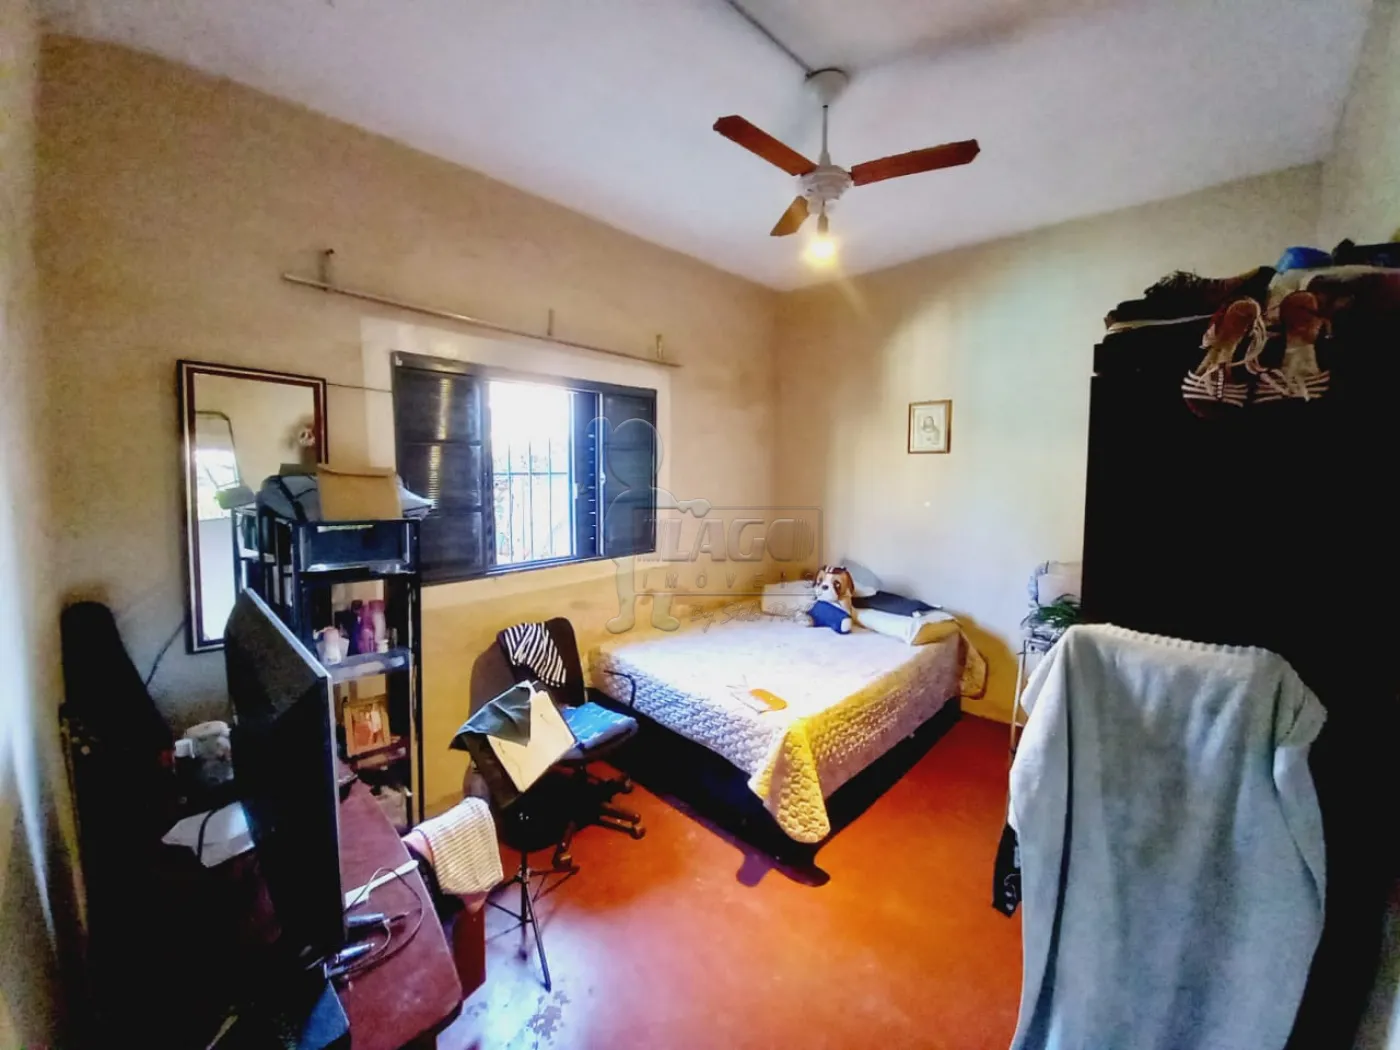 Comprar Casa / Padrão em Ribeirão Preto R$ 320.000,00 - Foto 24